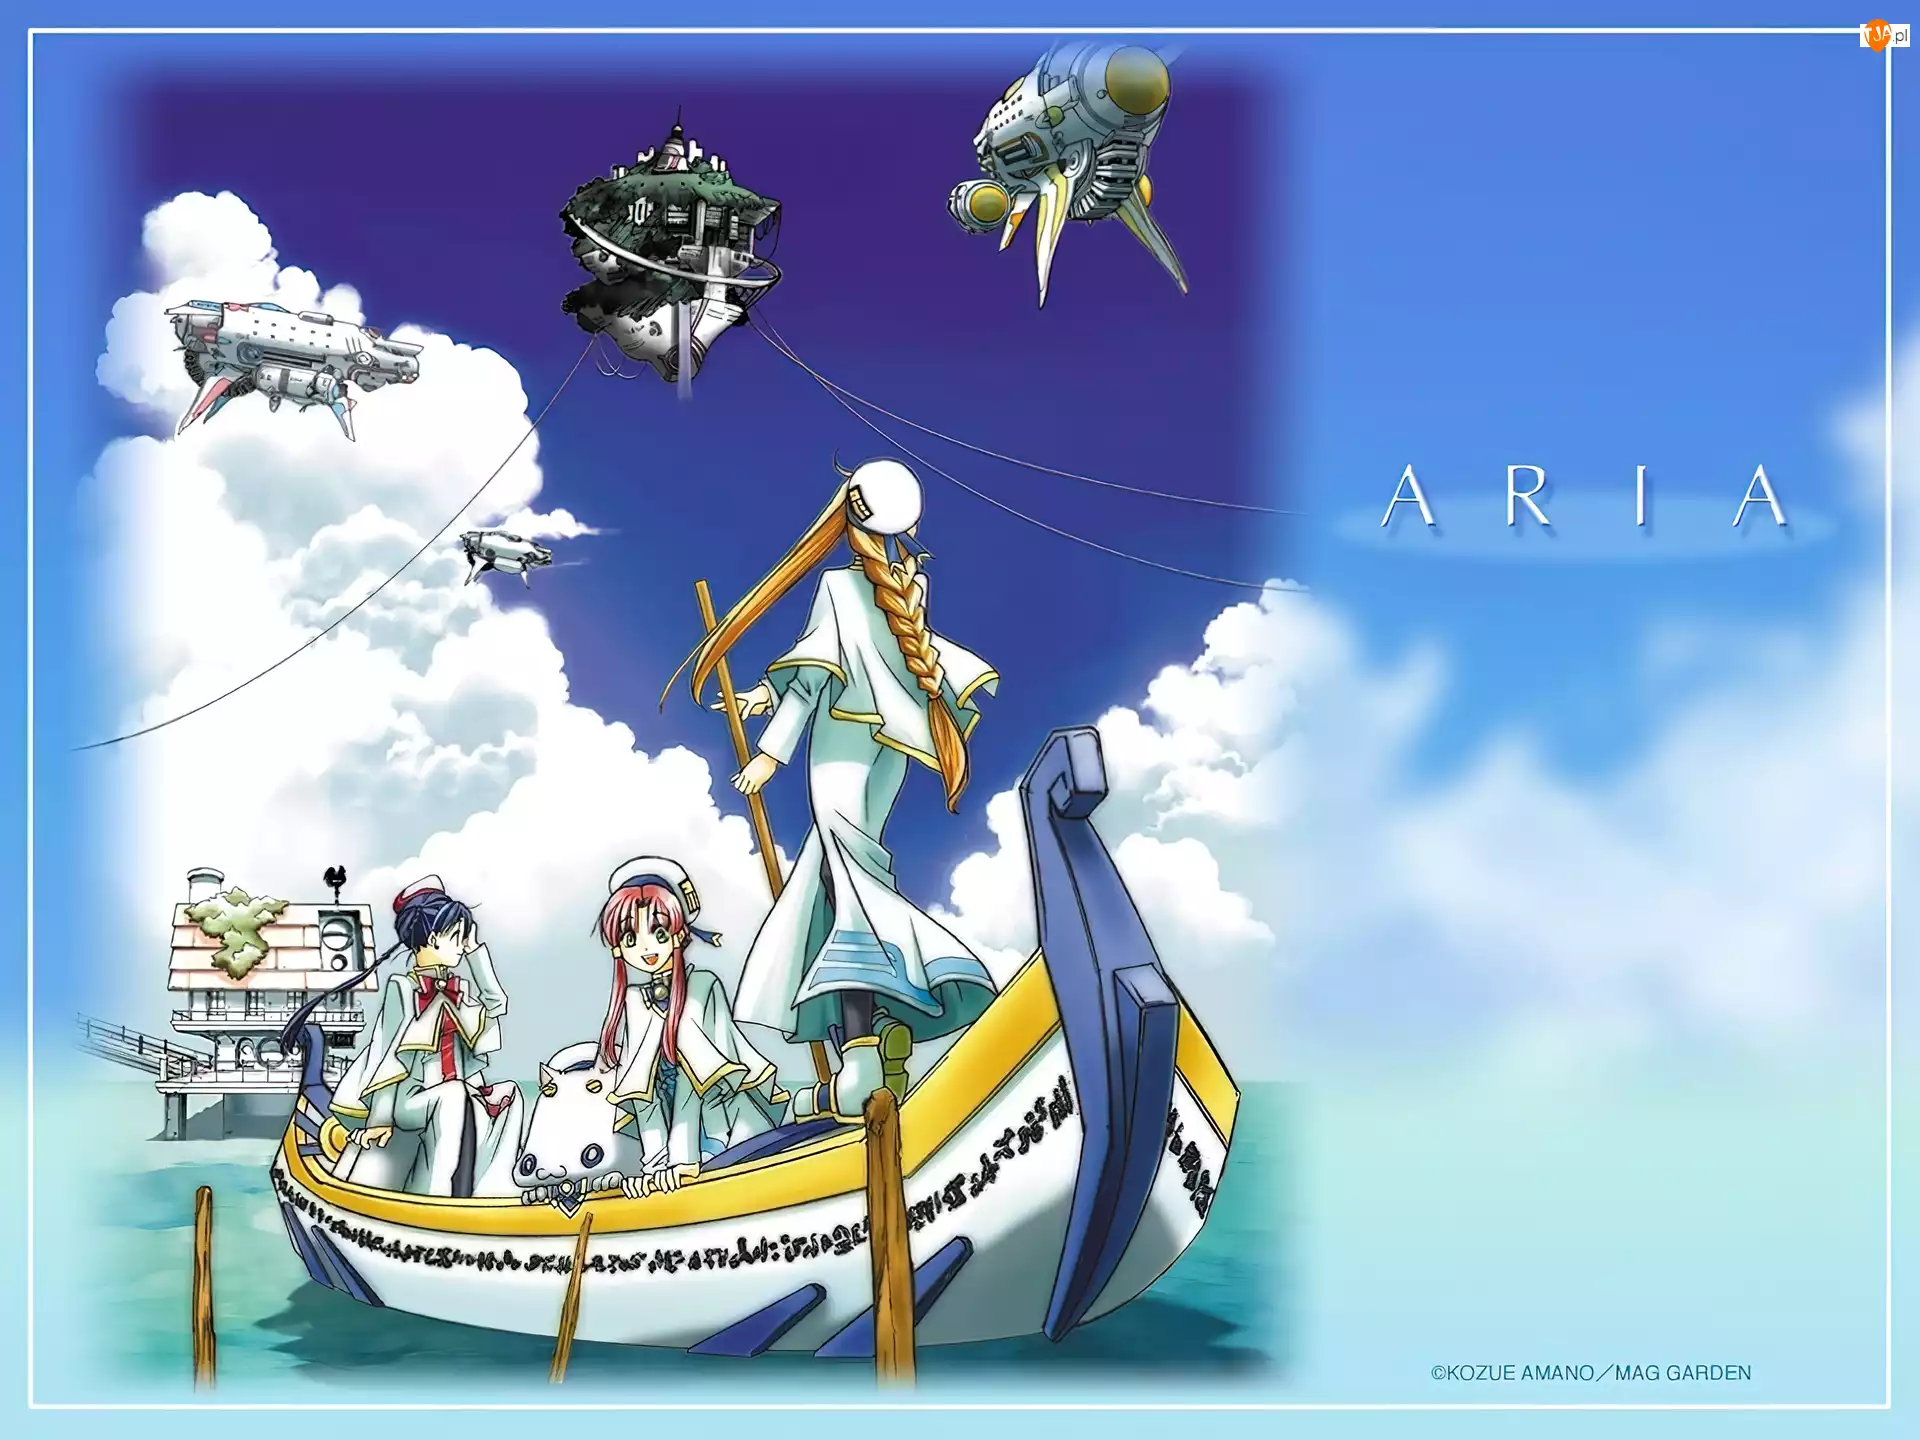 Aria, sterowce, łódka, ludzie